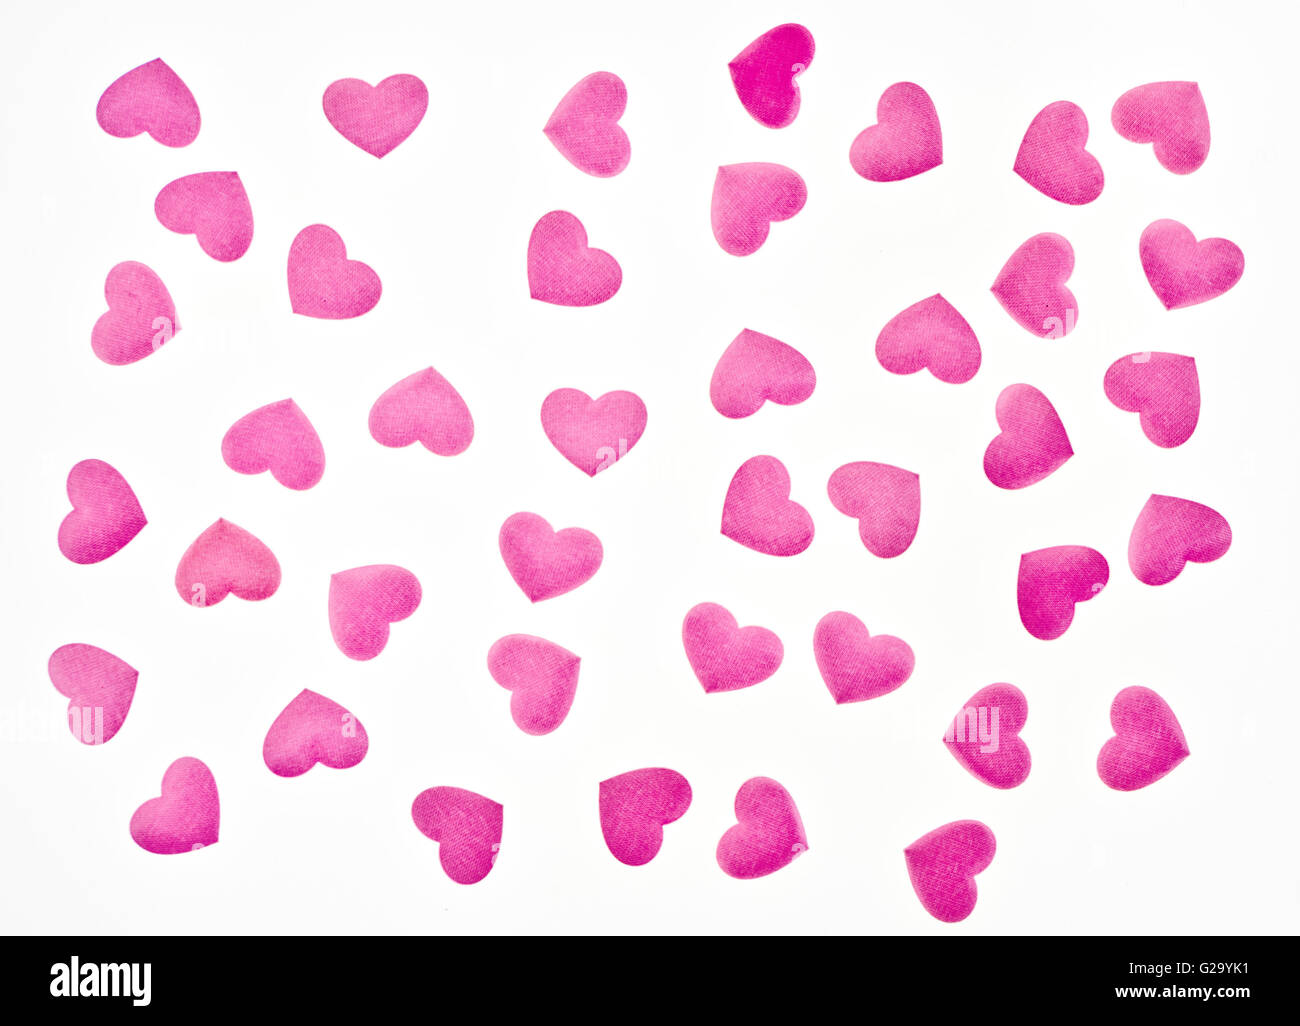 rote rose Knospe in einem rosa Herzen Hintergrund Stockfoto